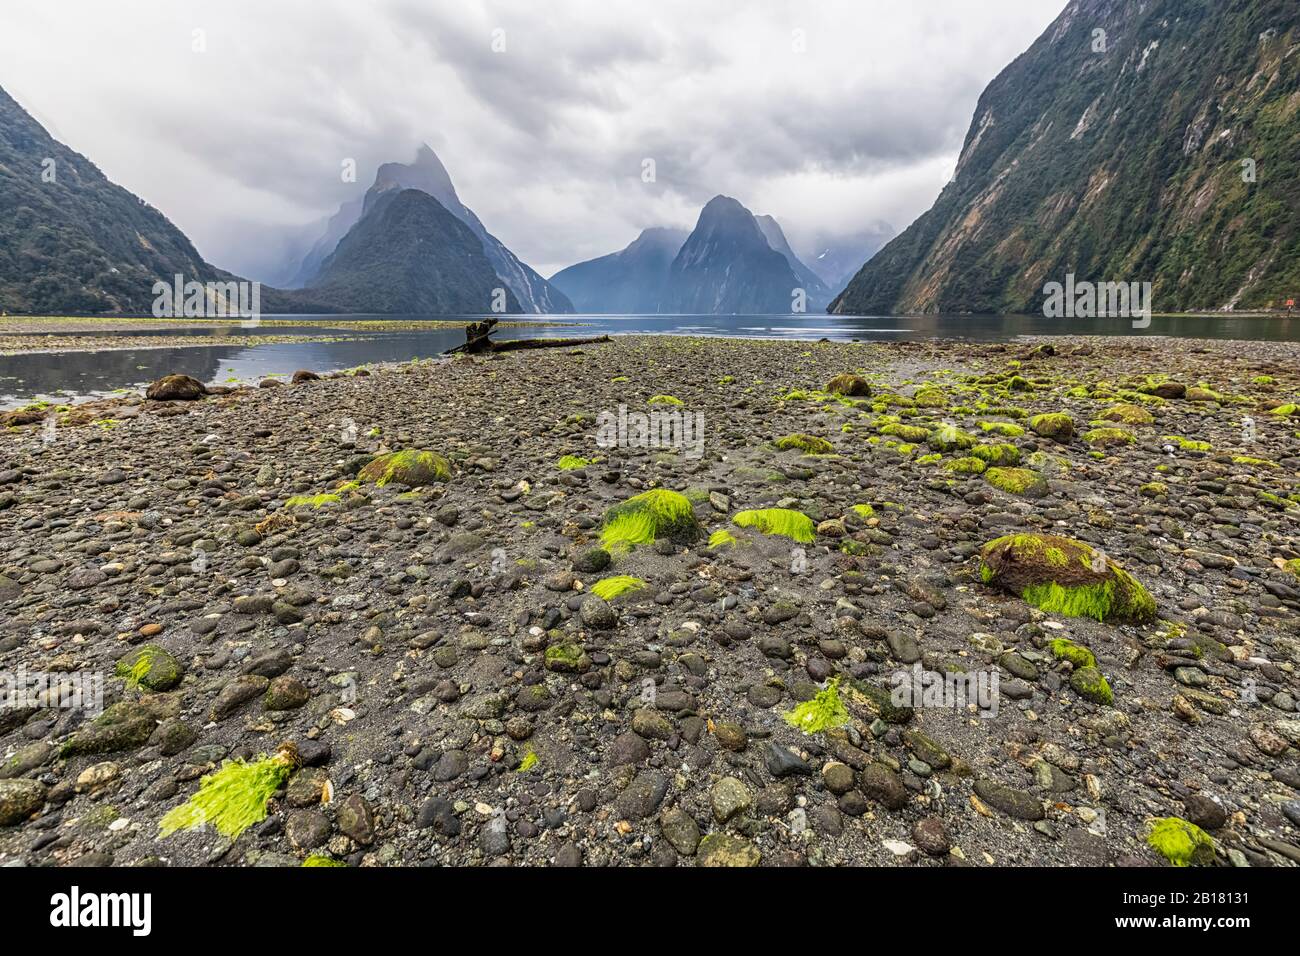 Neuseeland, Ozeanien, Südinsel, Southland, Fiordland National Park, Mitre Peak und Milford Sound Strand bei Ebbe mit grünen Algen auf Kieselsteinen Stockfoto